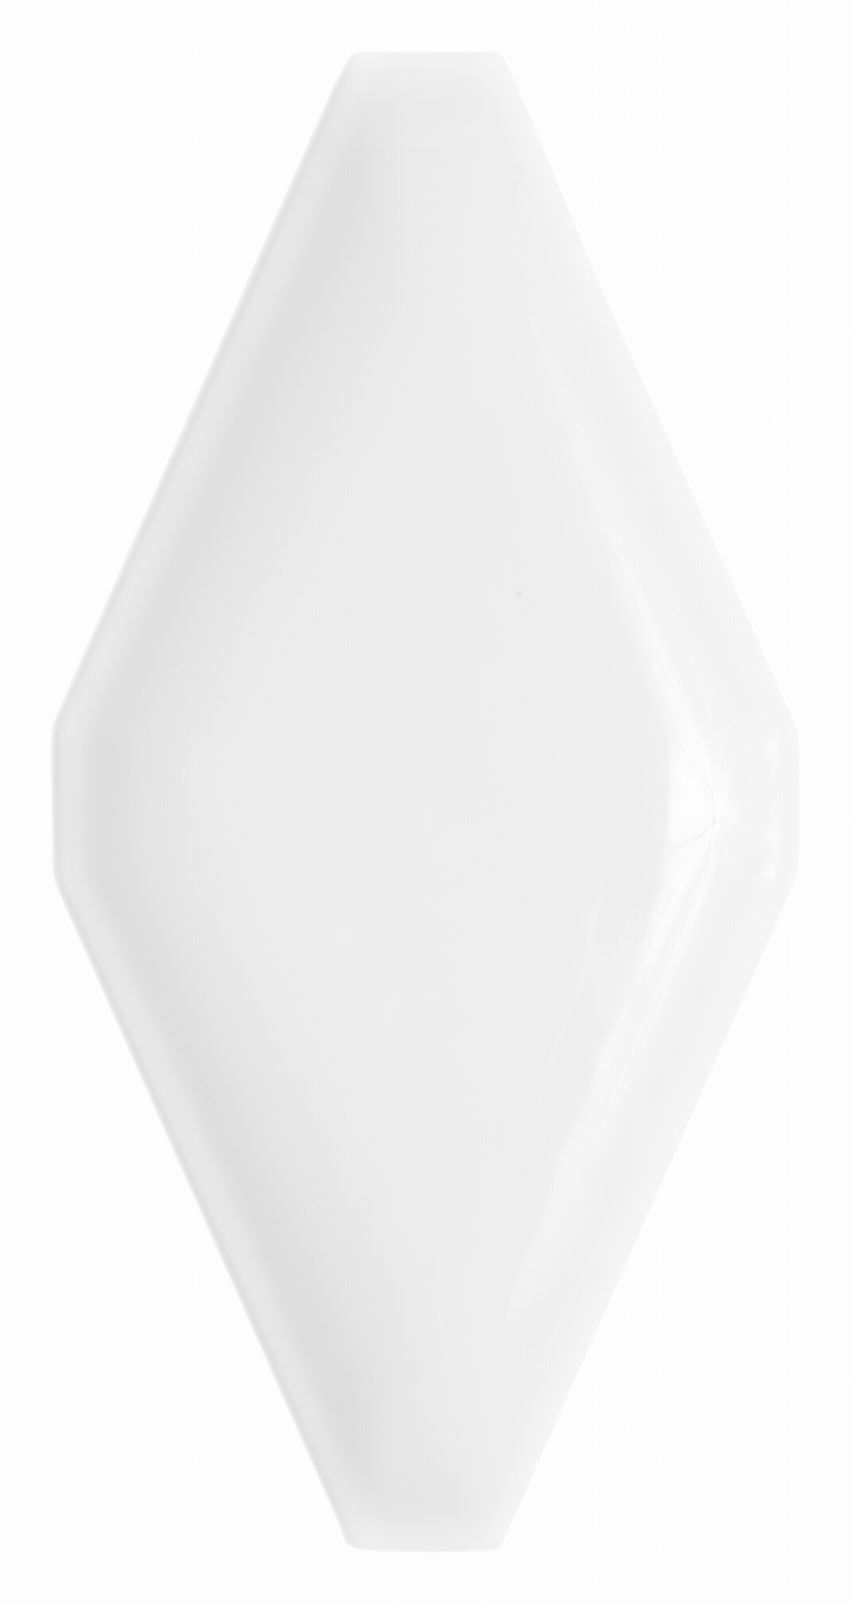 Płytka dekoracyjna ceramiczna 10x20 cm Dunin Carat White